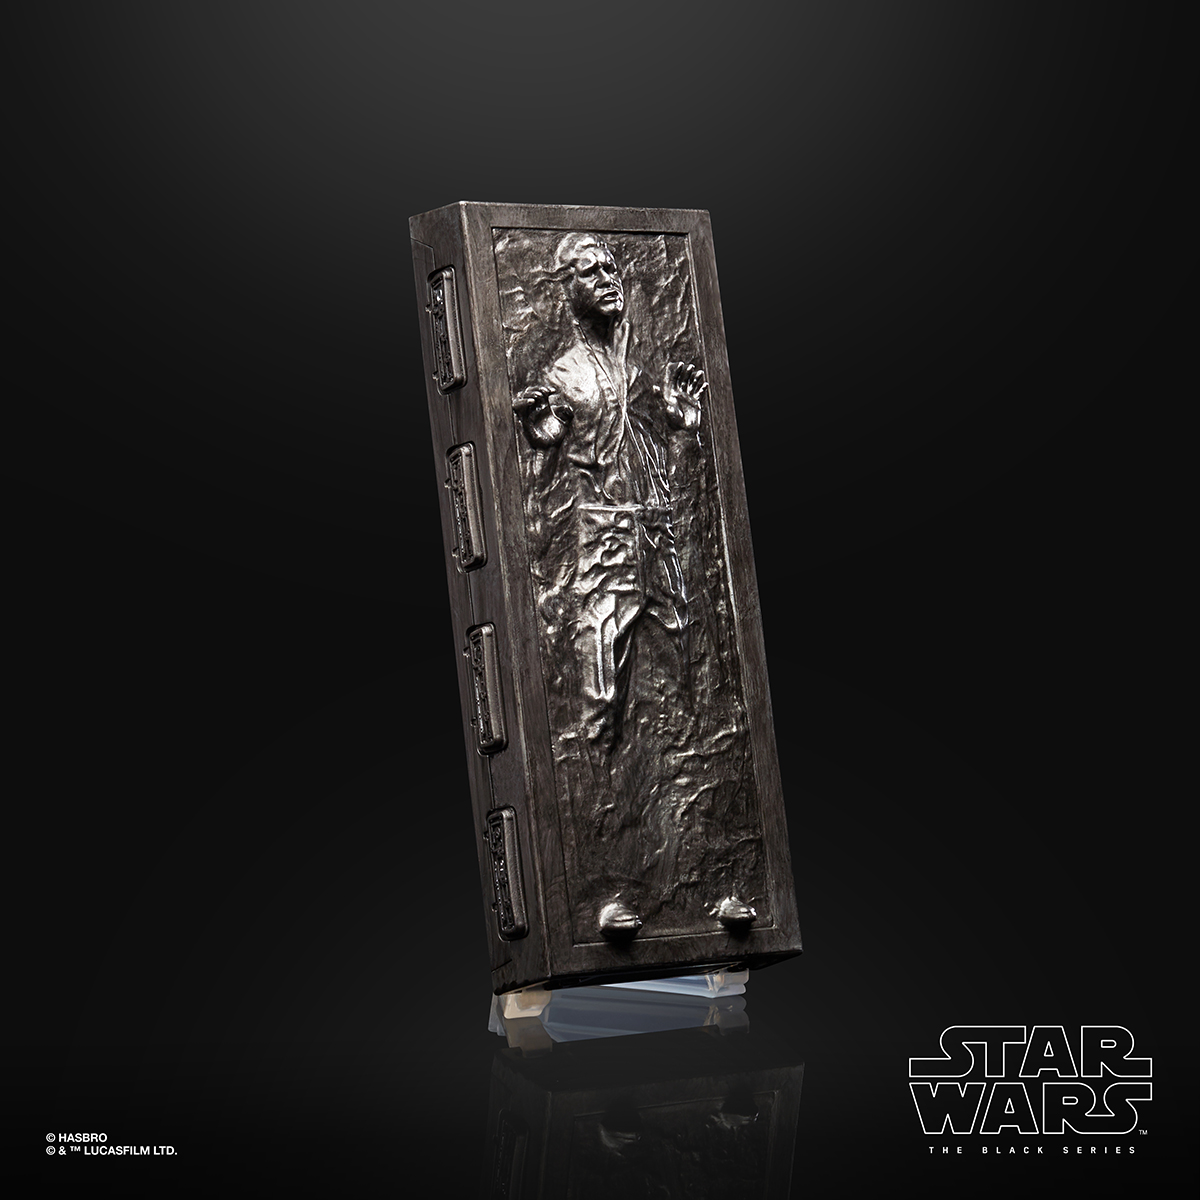 Star Wars The Black Series 6 Inch Han Solo Carbonite Figure Oop 2